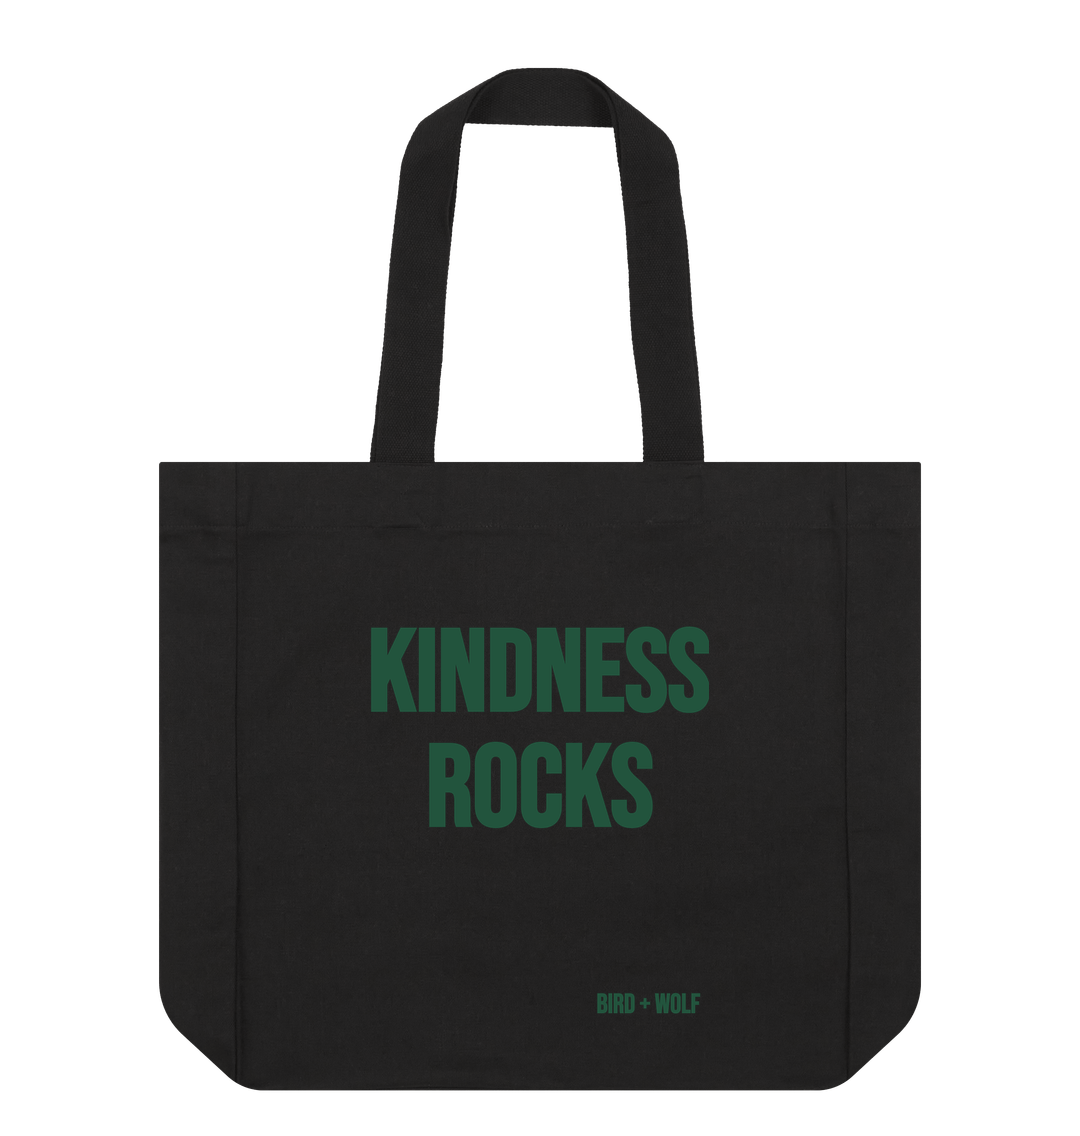 Black Kindness Rocks Everything Bag